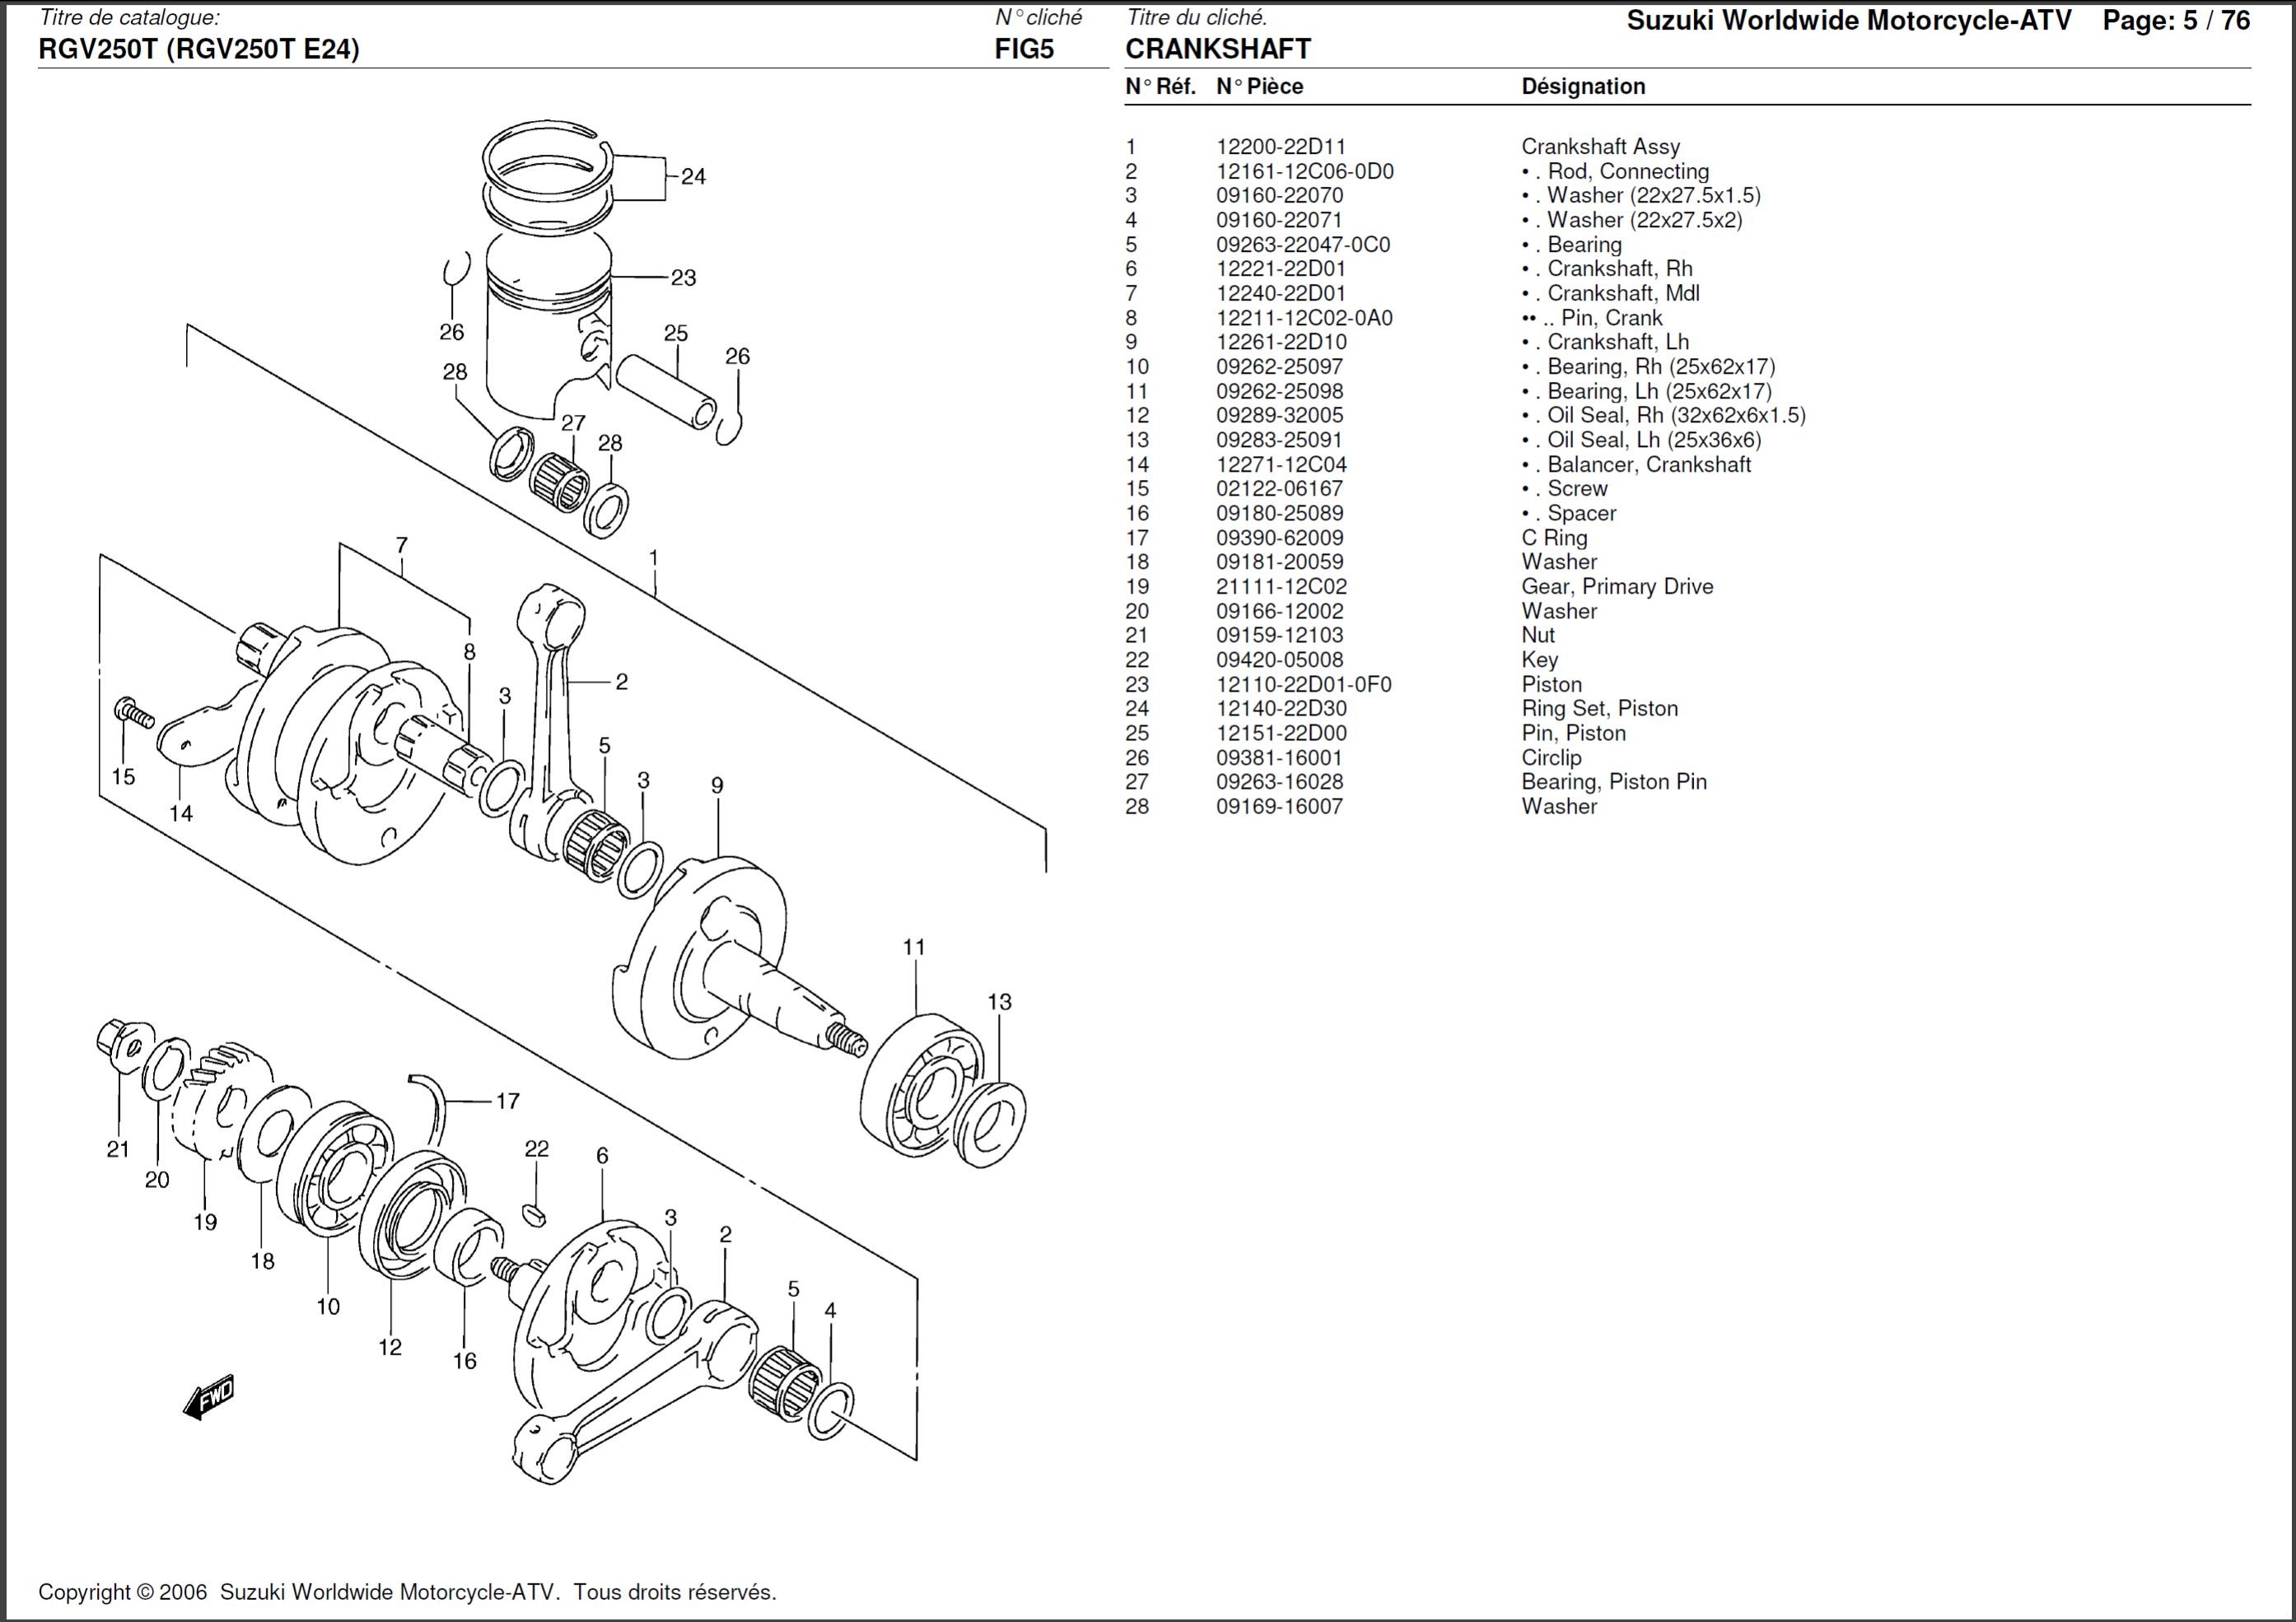 MBK Mach G / Yamaha Jog R 100% Custom Graphic Kit - GXS-RACING, kit